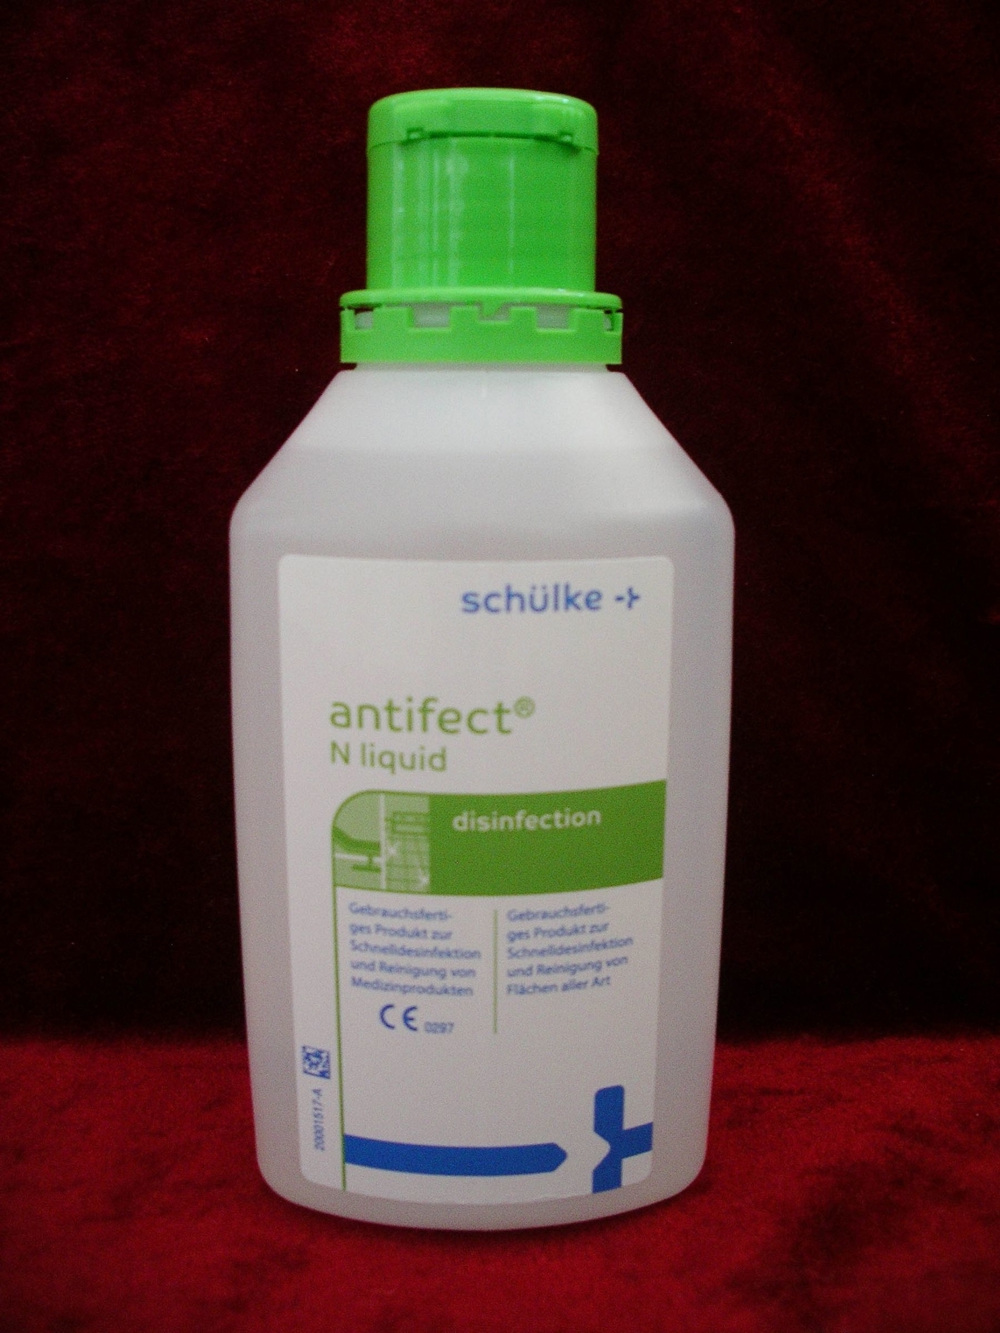 500 ml Flächen-Desinfektionsmittel Antifect N liquid, Schülke, neu